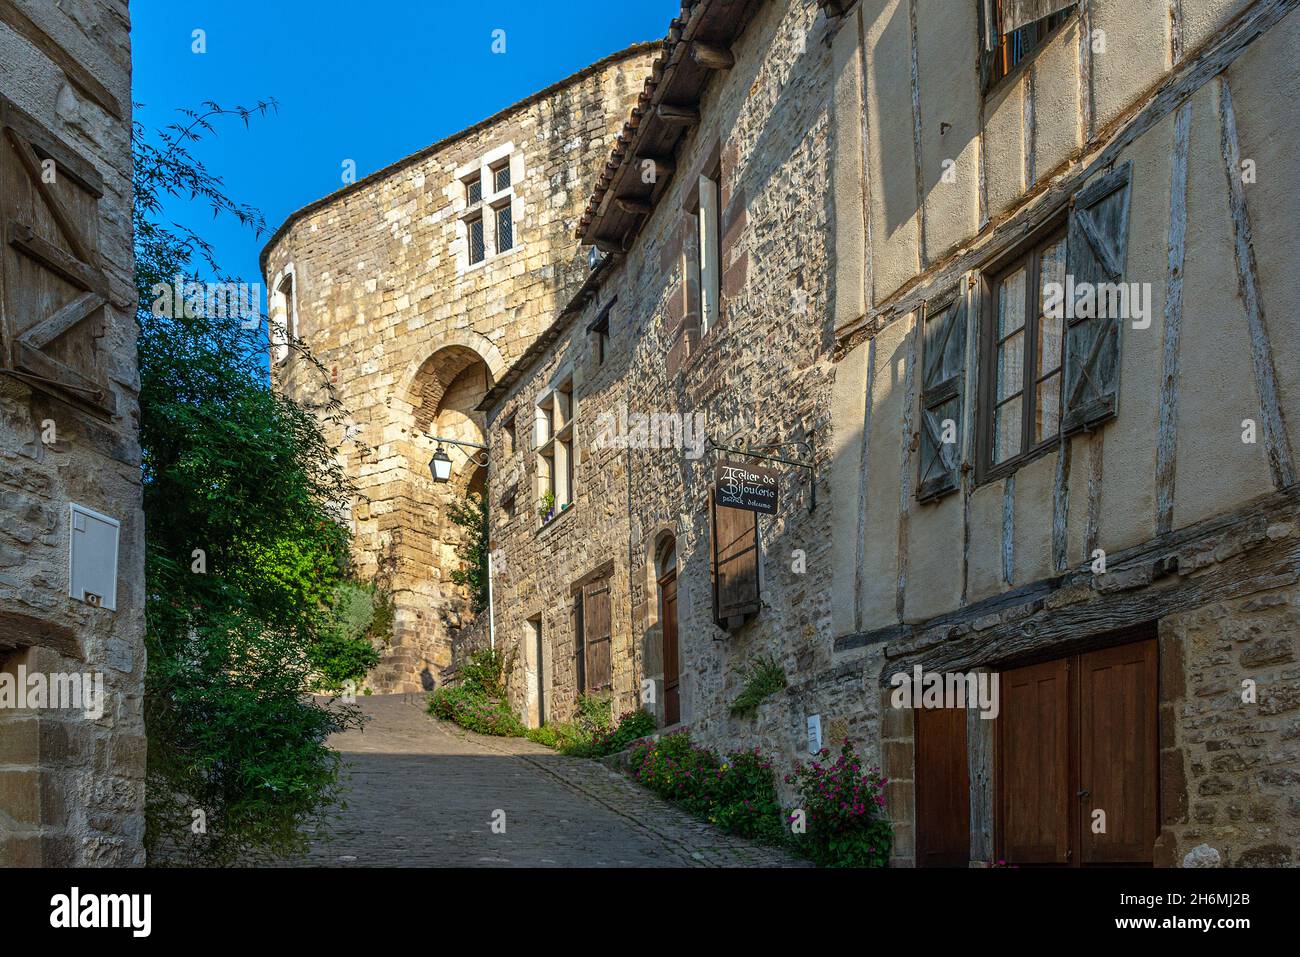 La colline médiévale, ou Bastide village de cordes-sur-ciel dans le sud de la France. Banque D'Images